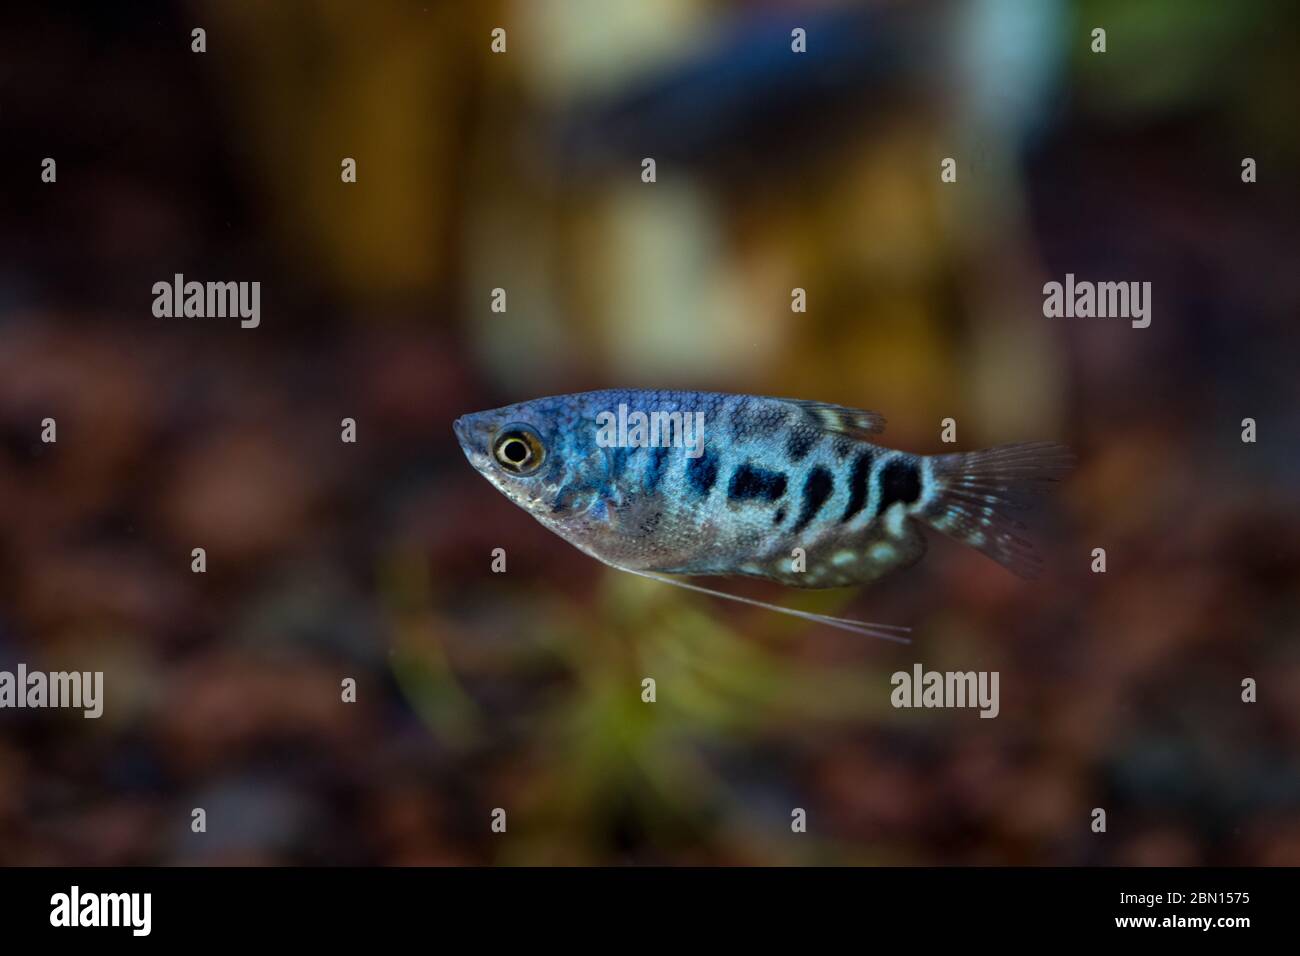 Blue Cosby Gourami, trichogaster trichopterus ou Opaline Gouramis. Magnifique poisson d'aquarium, dont le corps est tacheté en noir, nagez librement dans l'eau. Banque D'Images